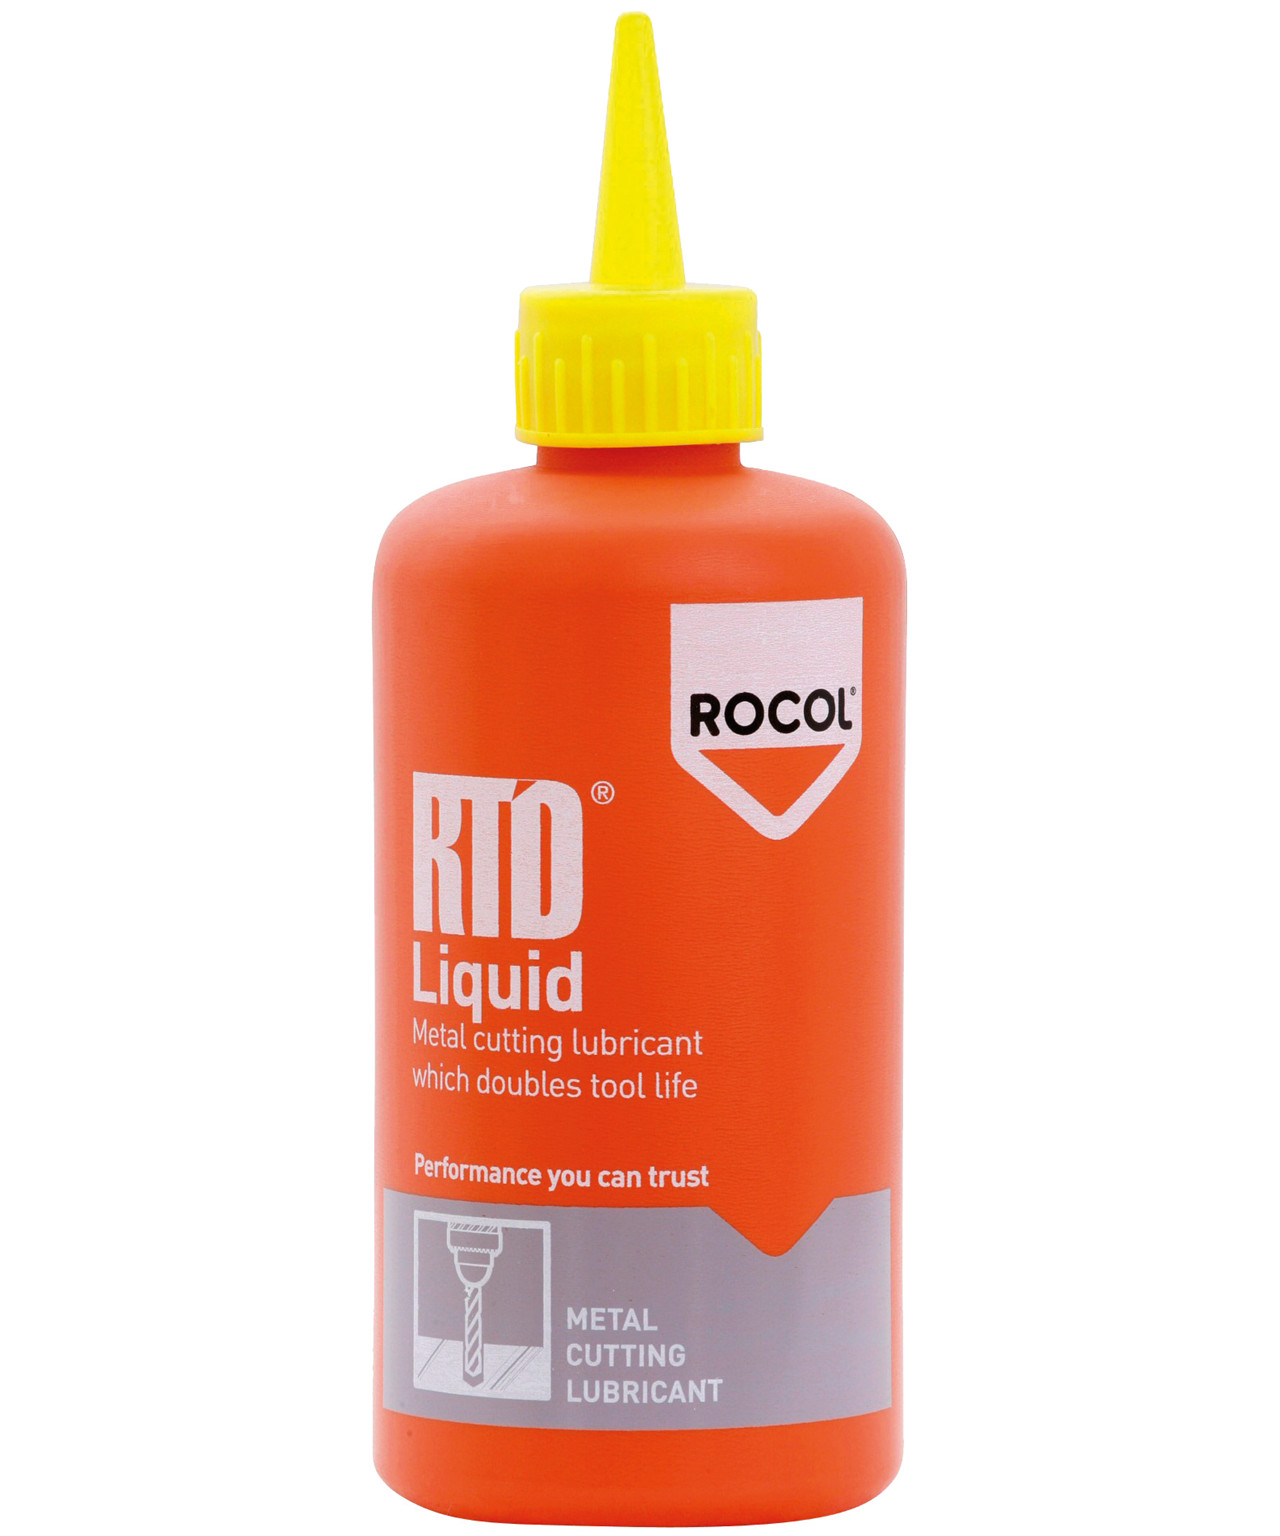 Billede af Rocol RTD Liquid skæreolie hos Specialbutikken